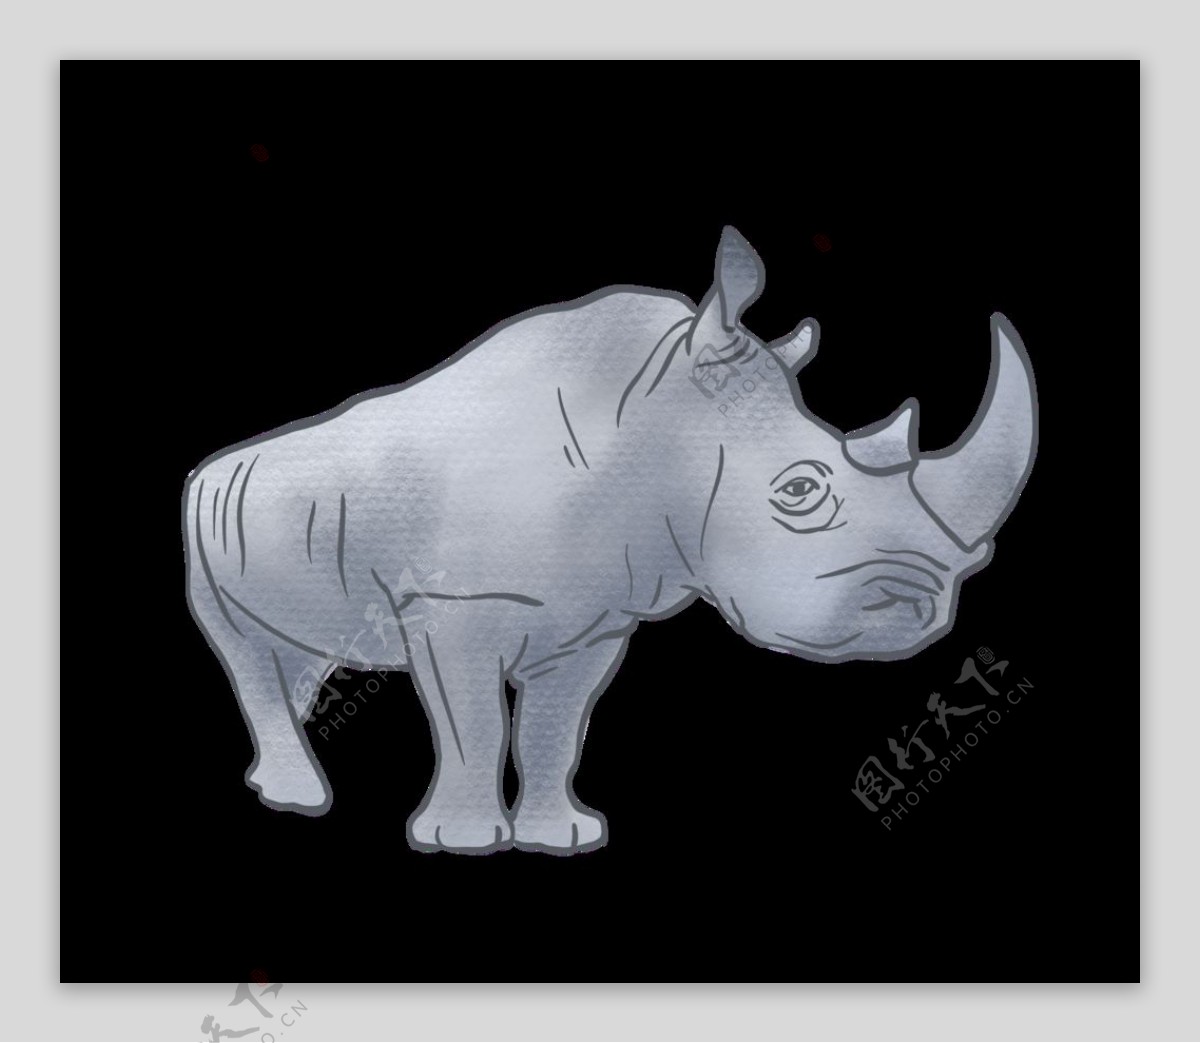 黑色底板上的犀牛插画图片